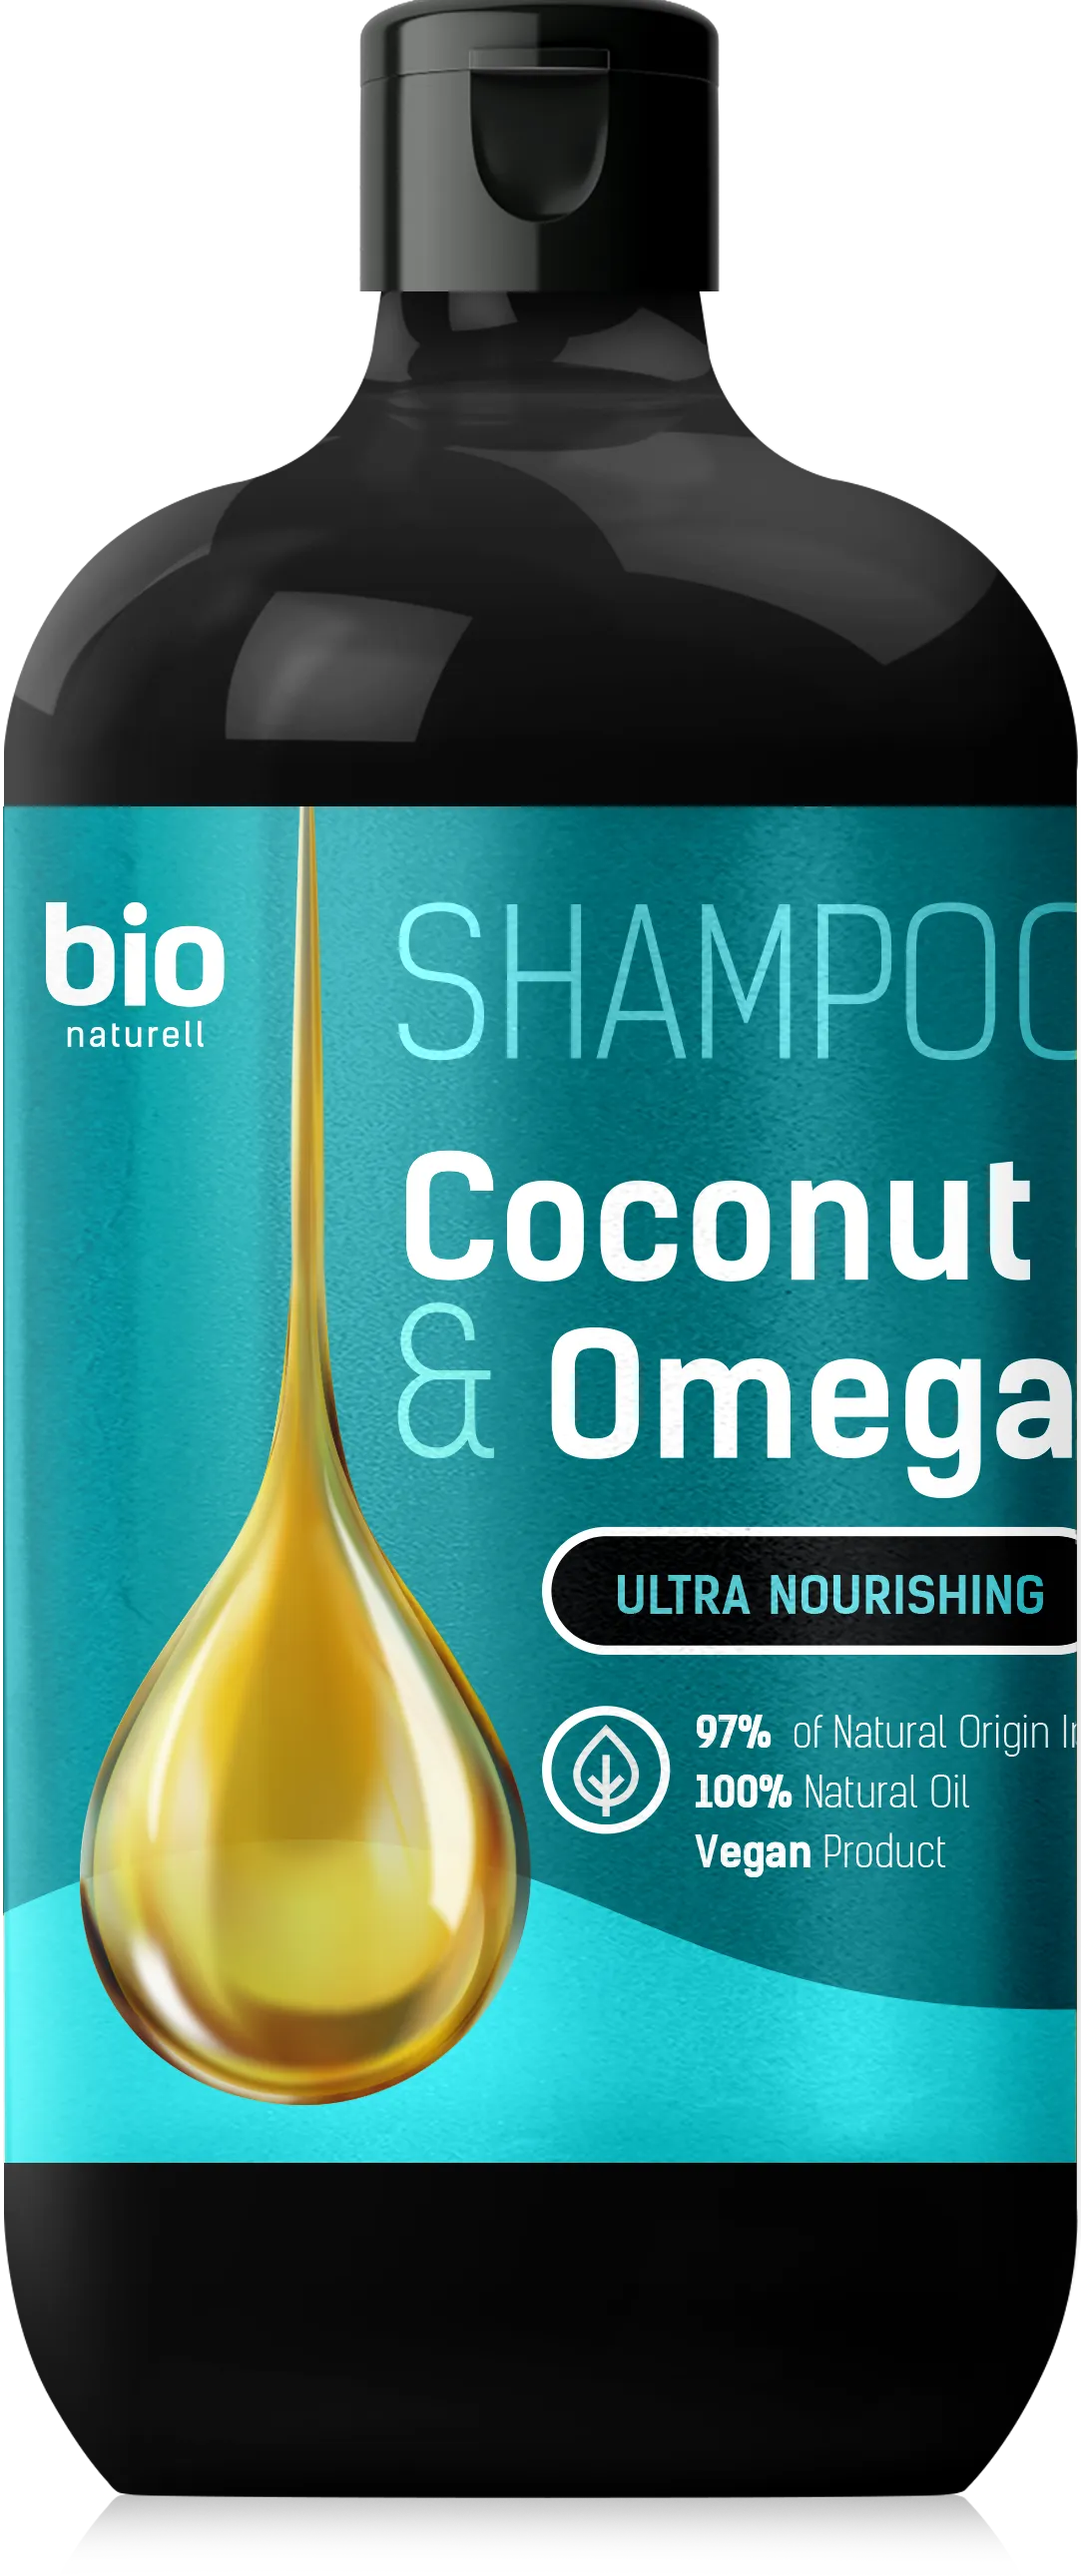 BIO Naturell Ultra Nawilżenie szampon do włosów Olej kokosowy i Omega 3, 946 ml